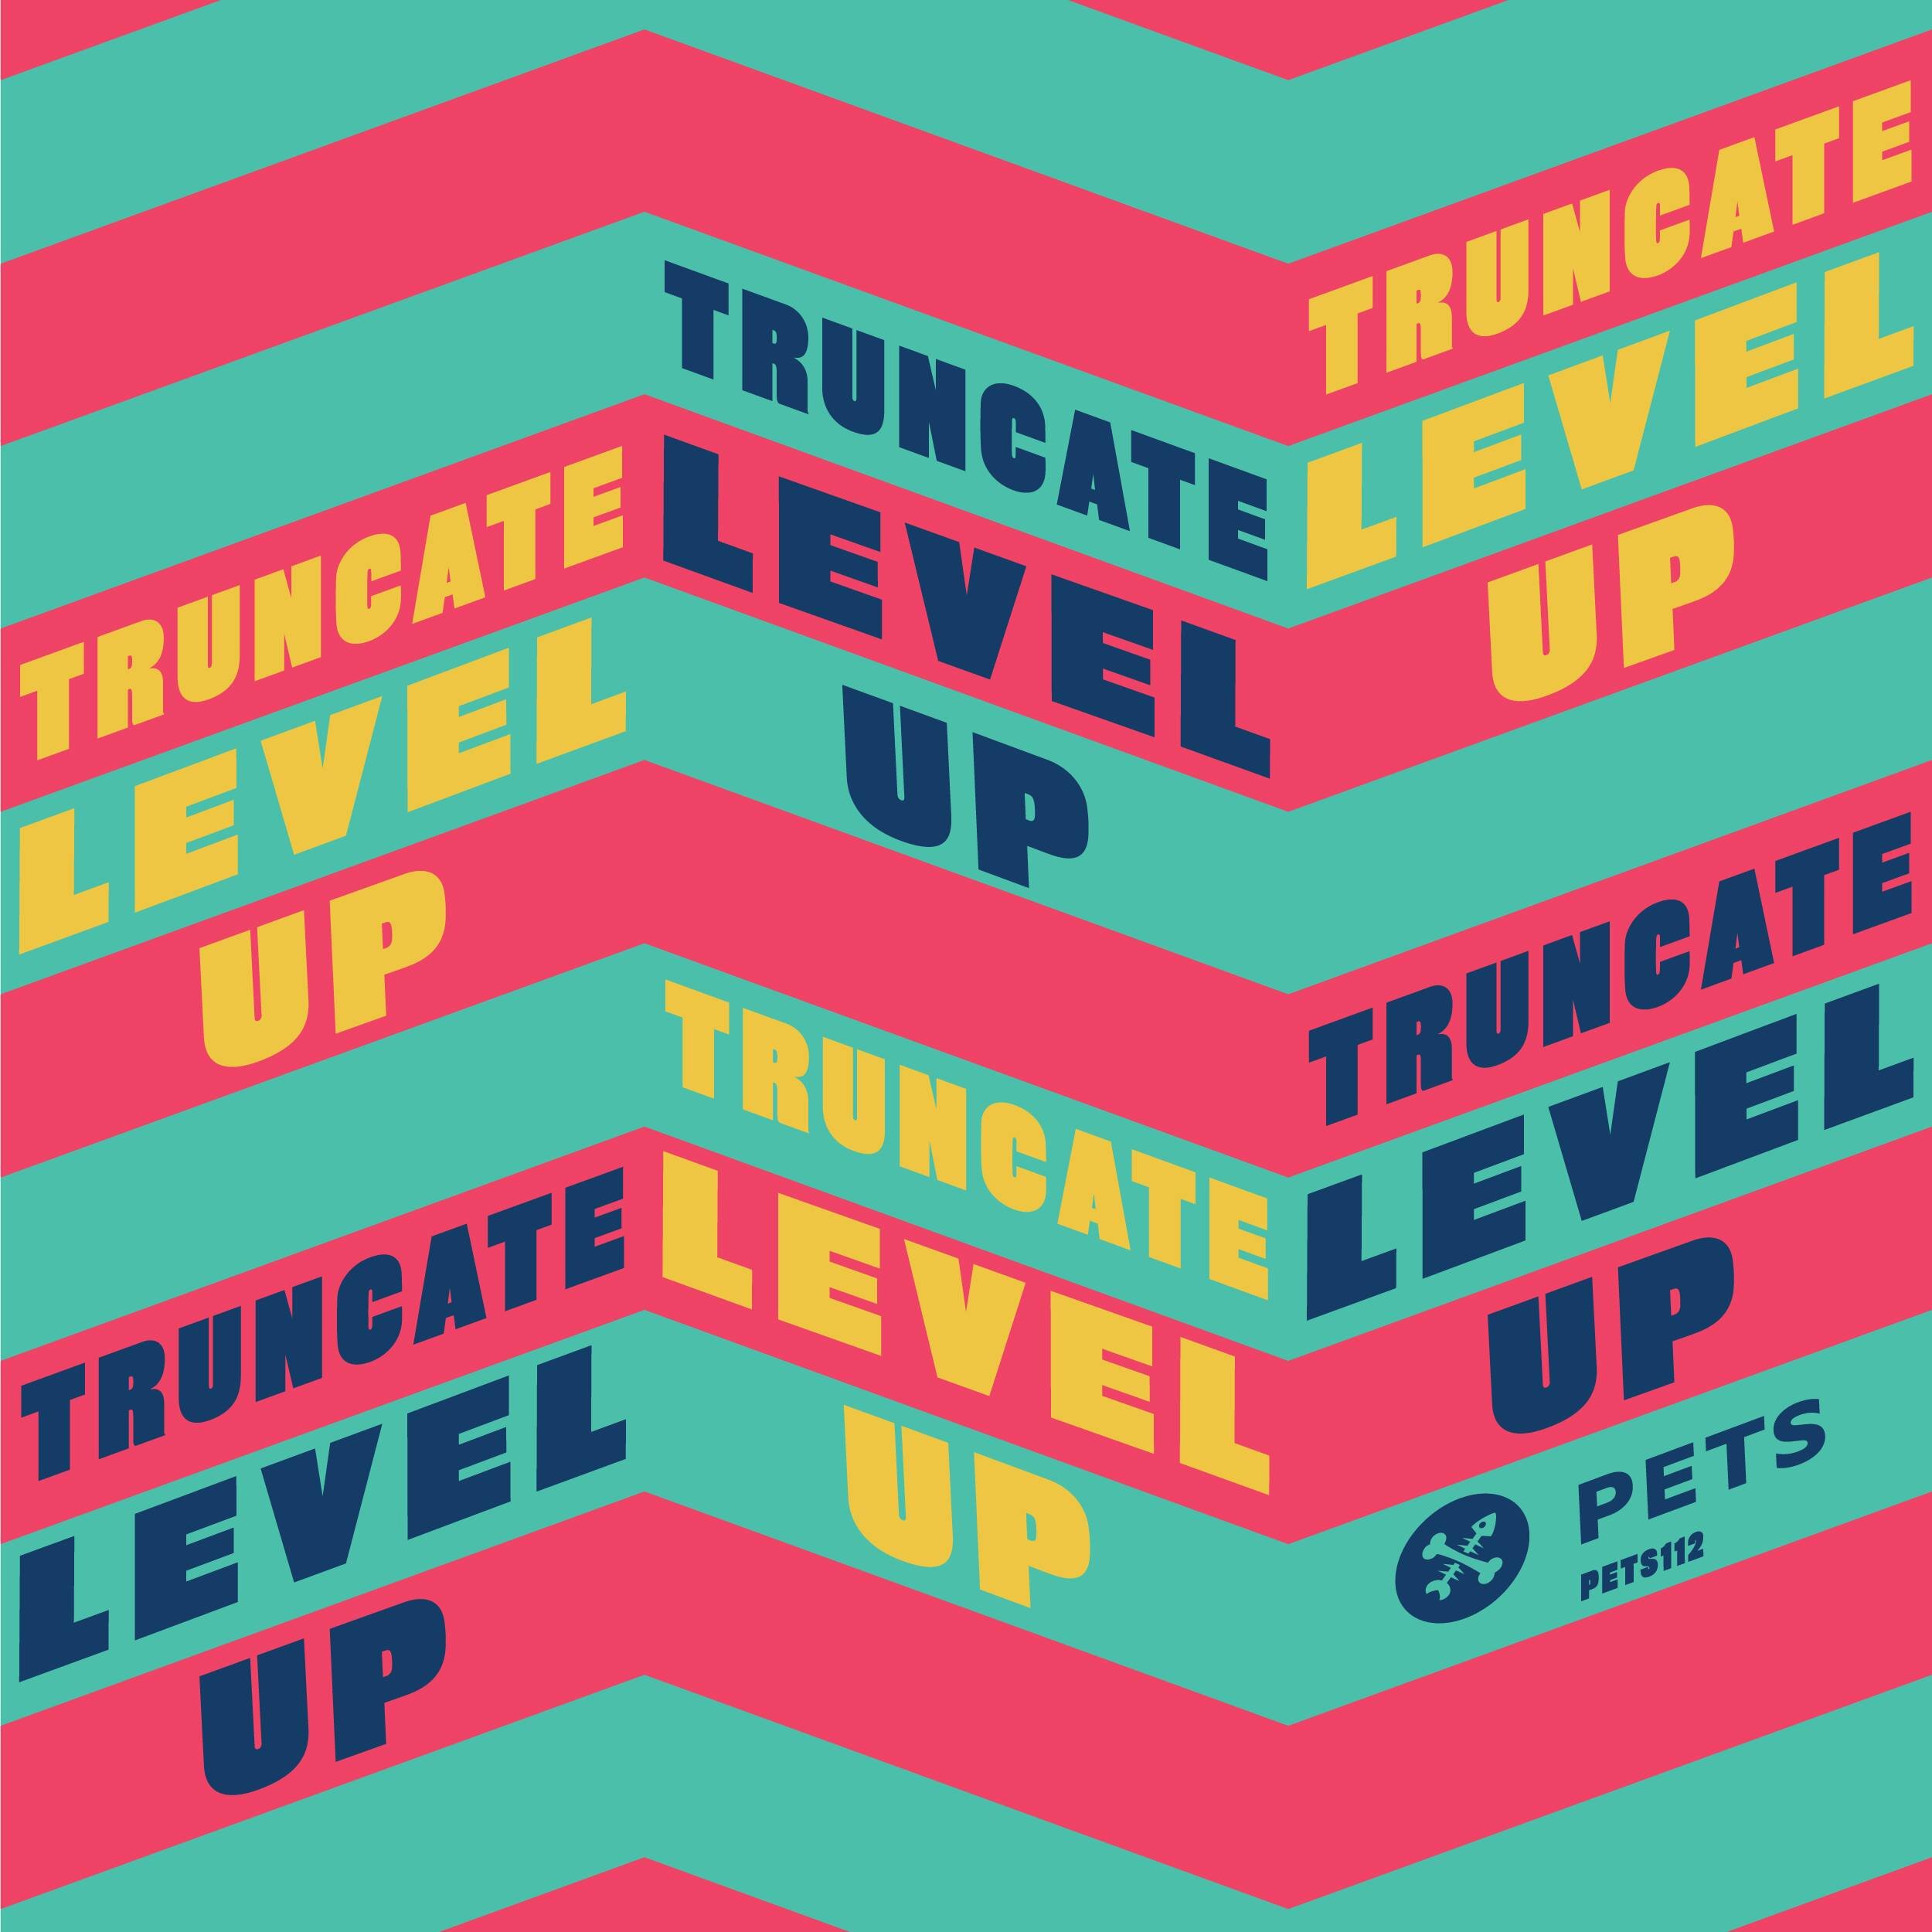 Truncate - Level Up [PETS112]